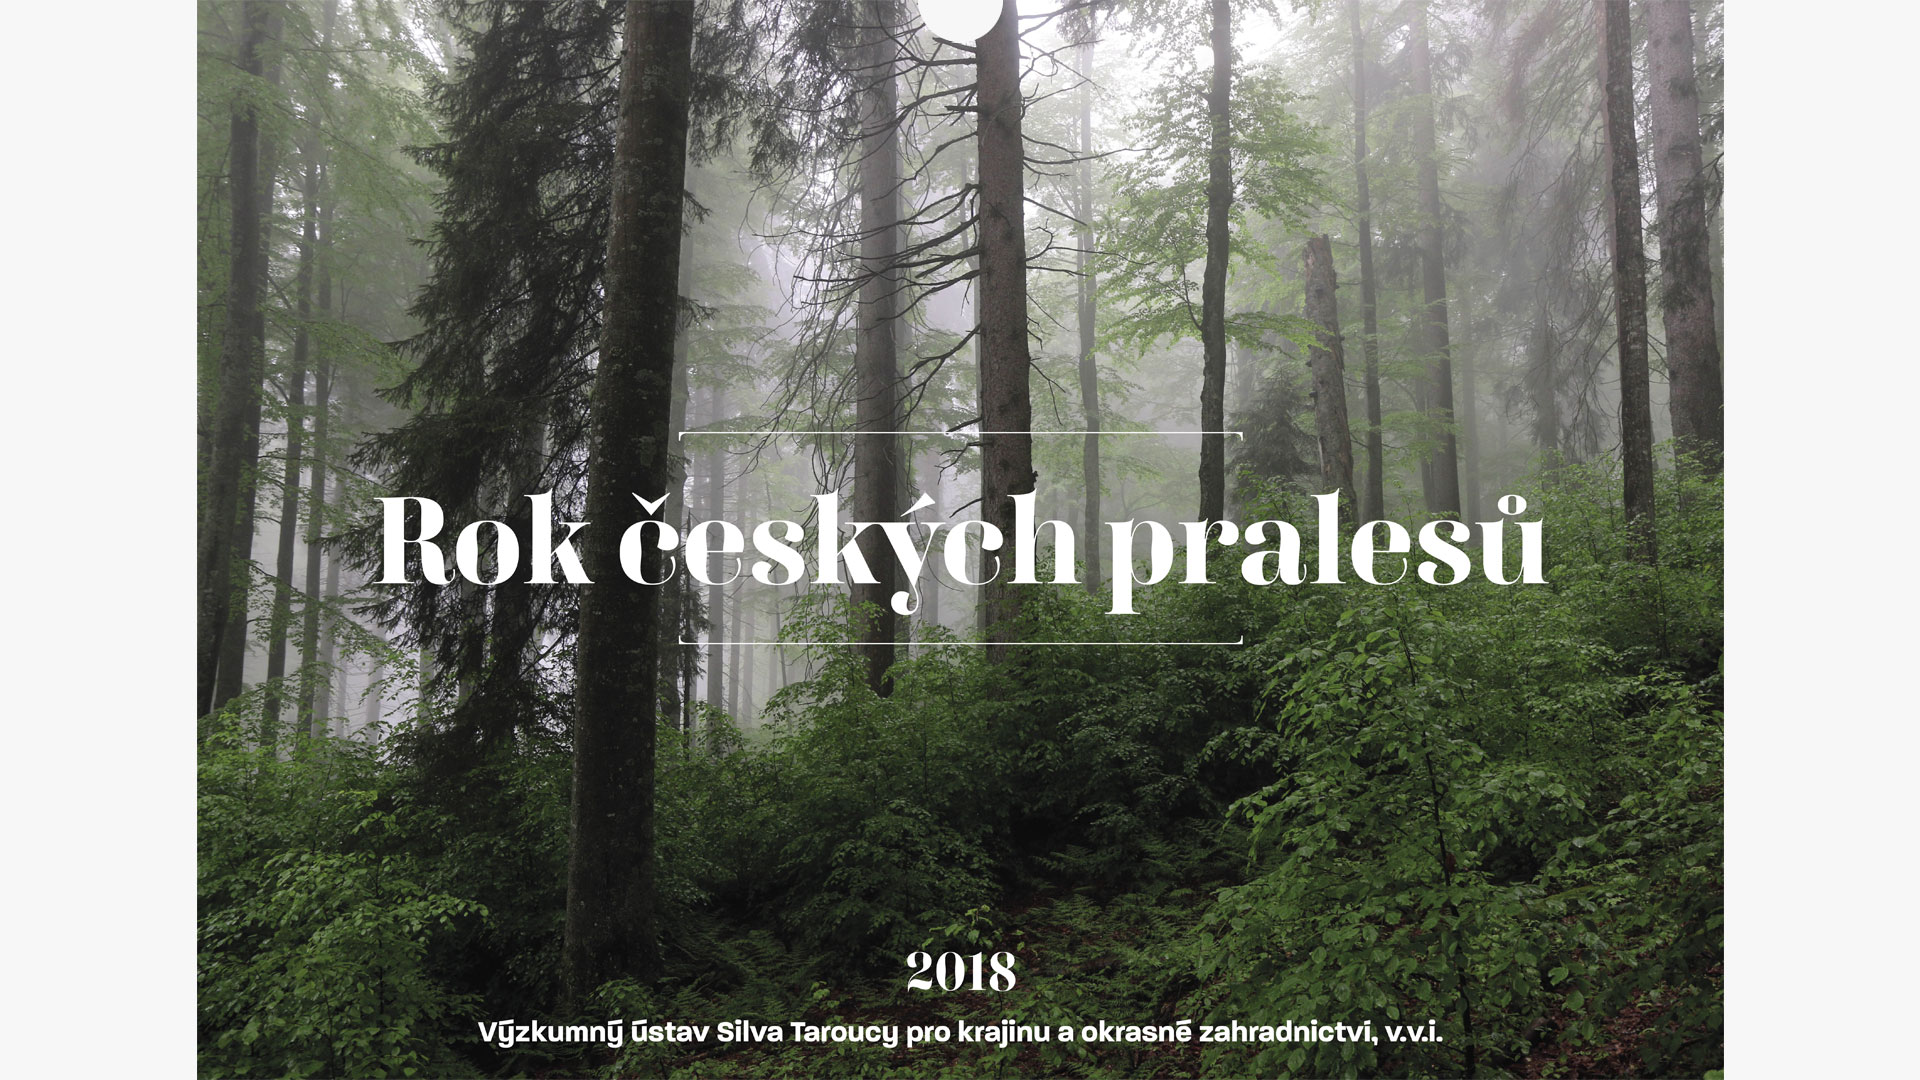 Kalendář pralesů ČR | Webdesign Blog